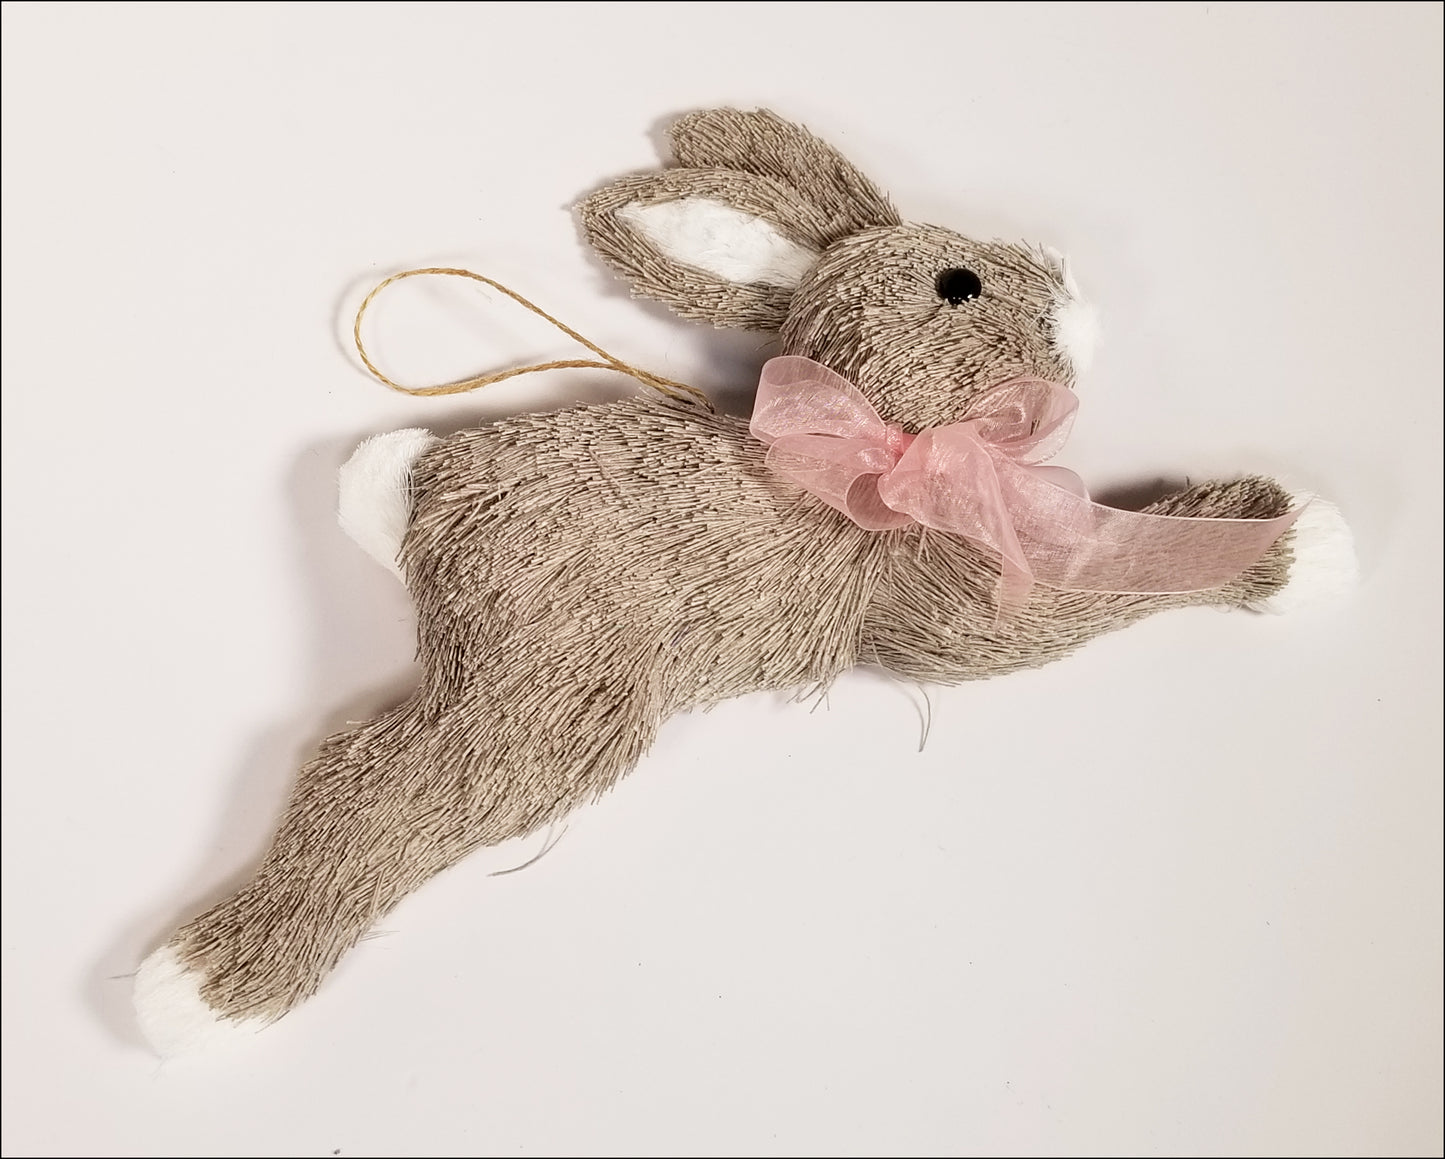 Running Bunny Rabbit - Designer DIY